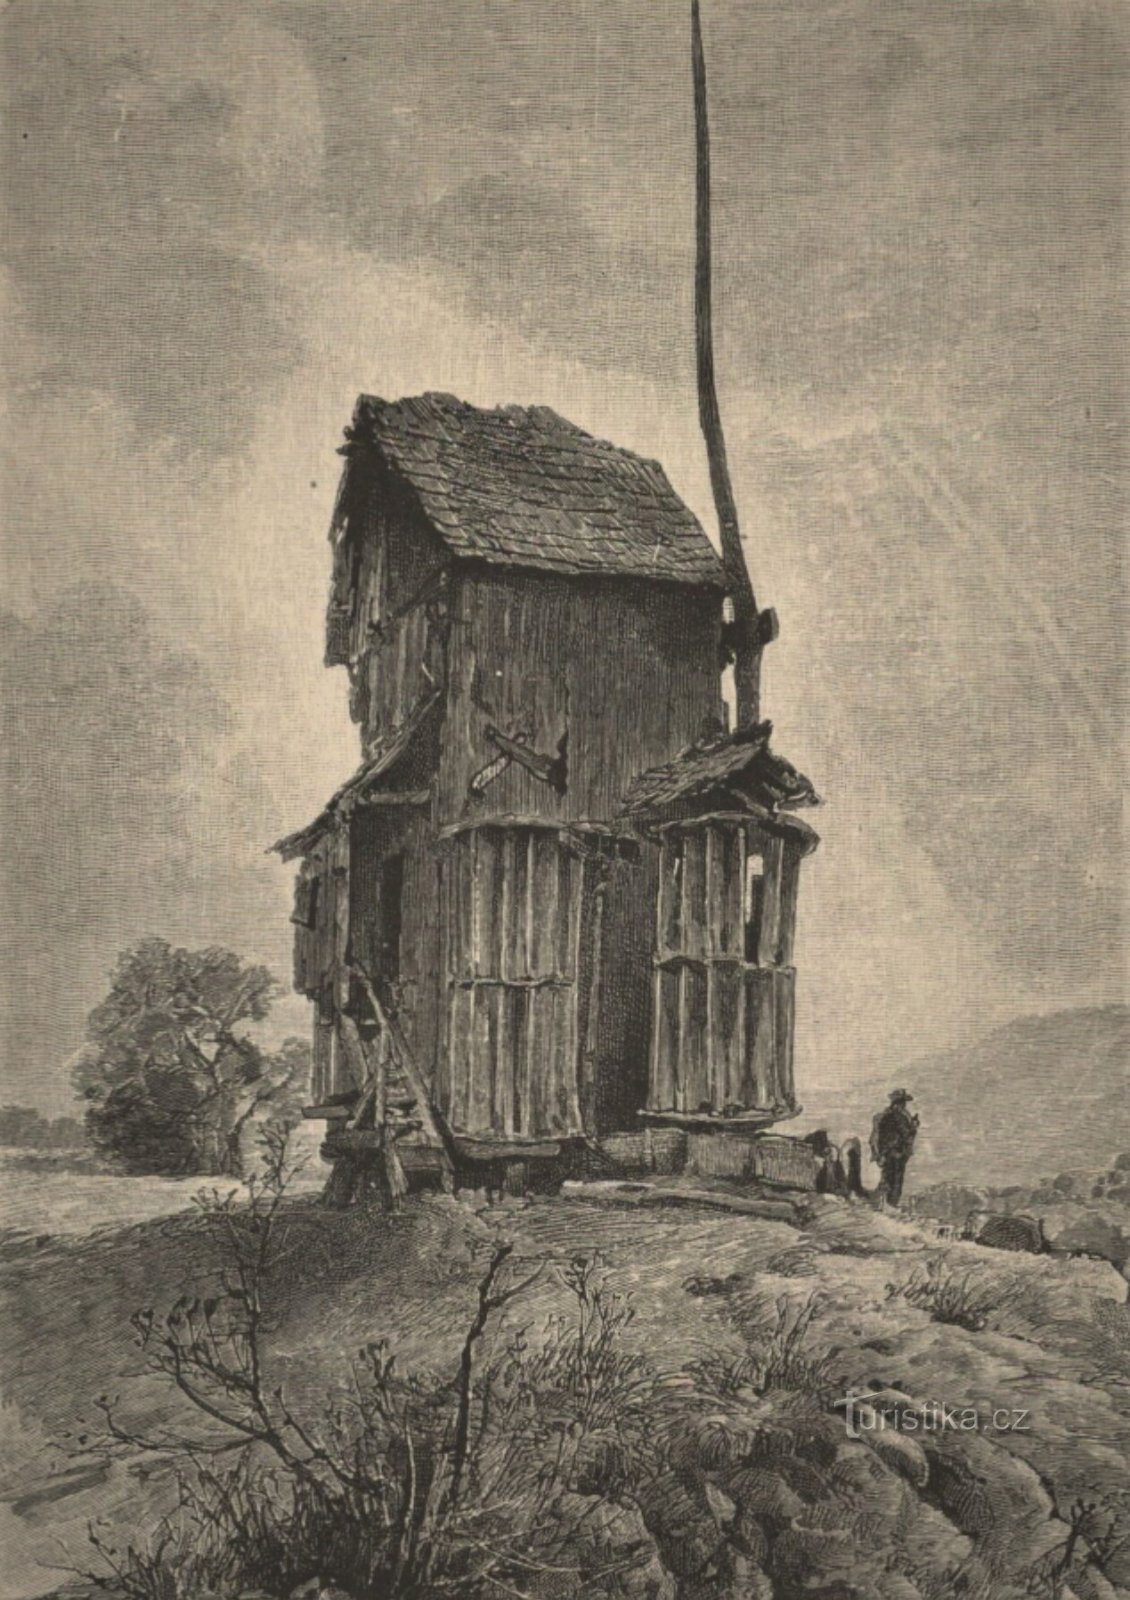 Disegno del mulino a vento di Doblnice della seconda metà del XIX secolo